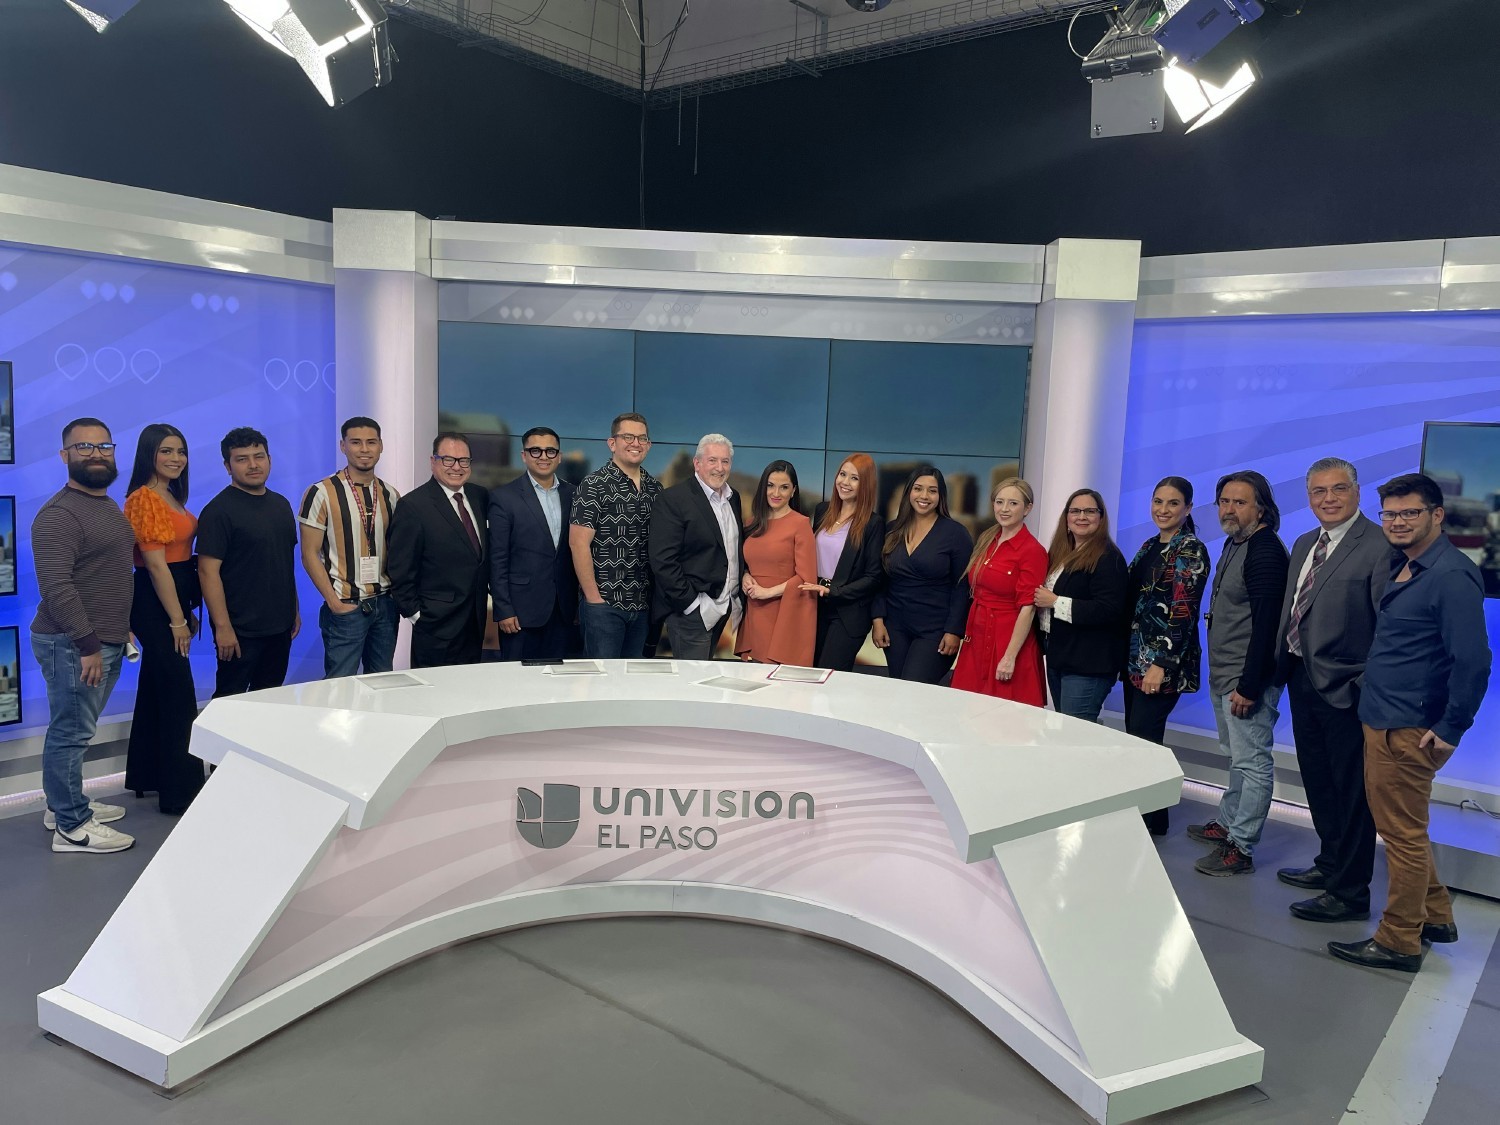 Entravision El Paso news studio and news team.